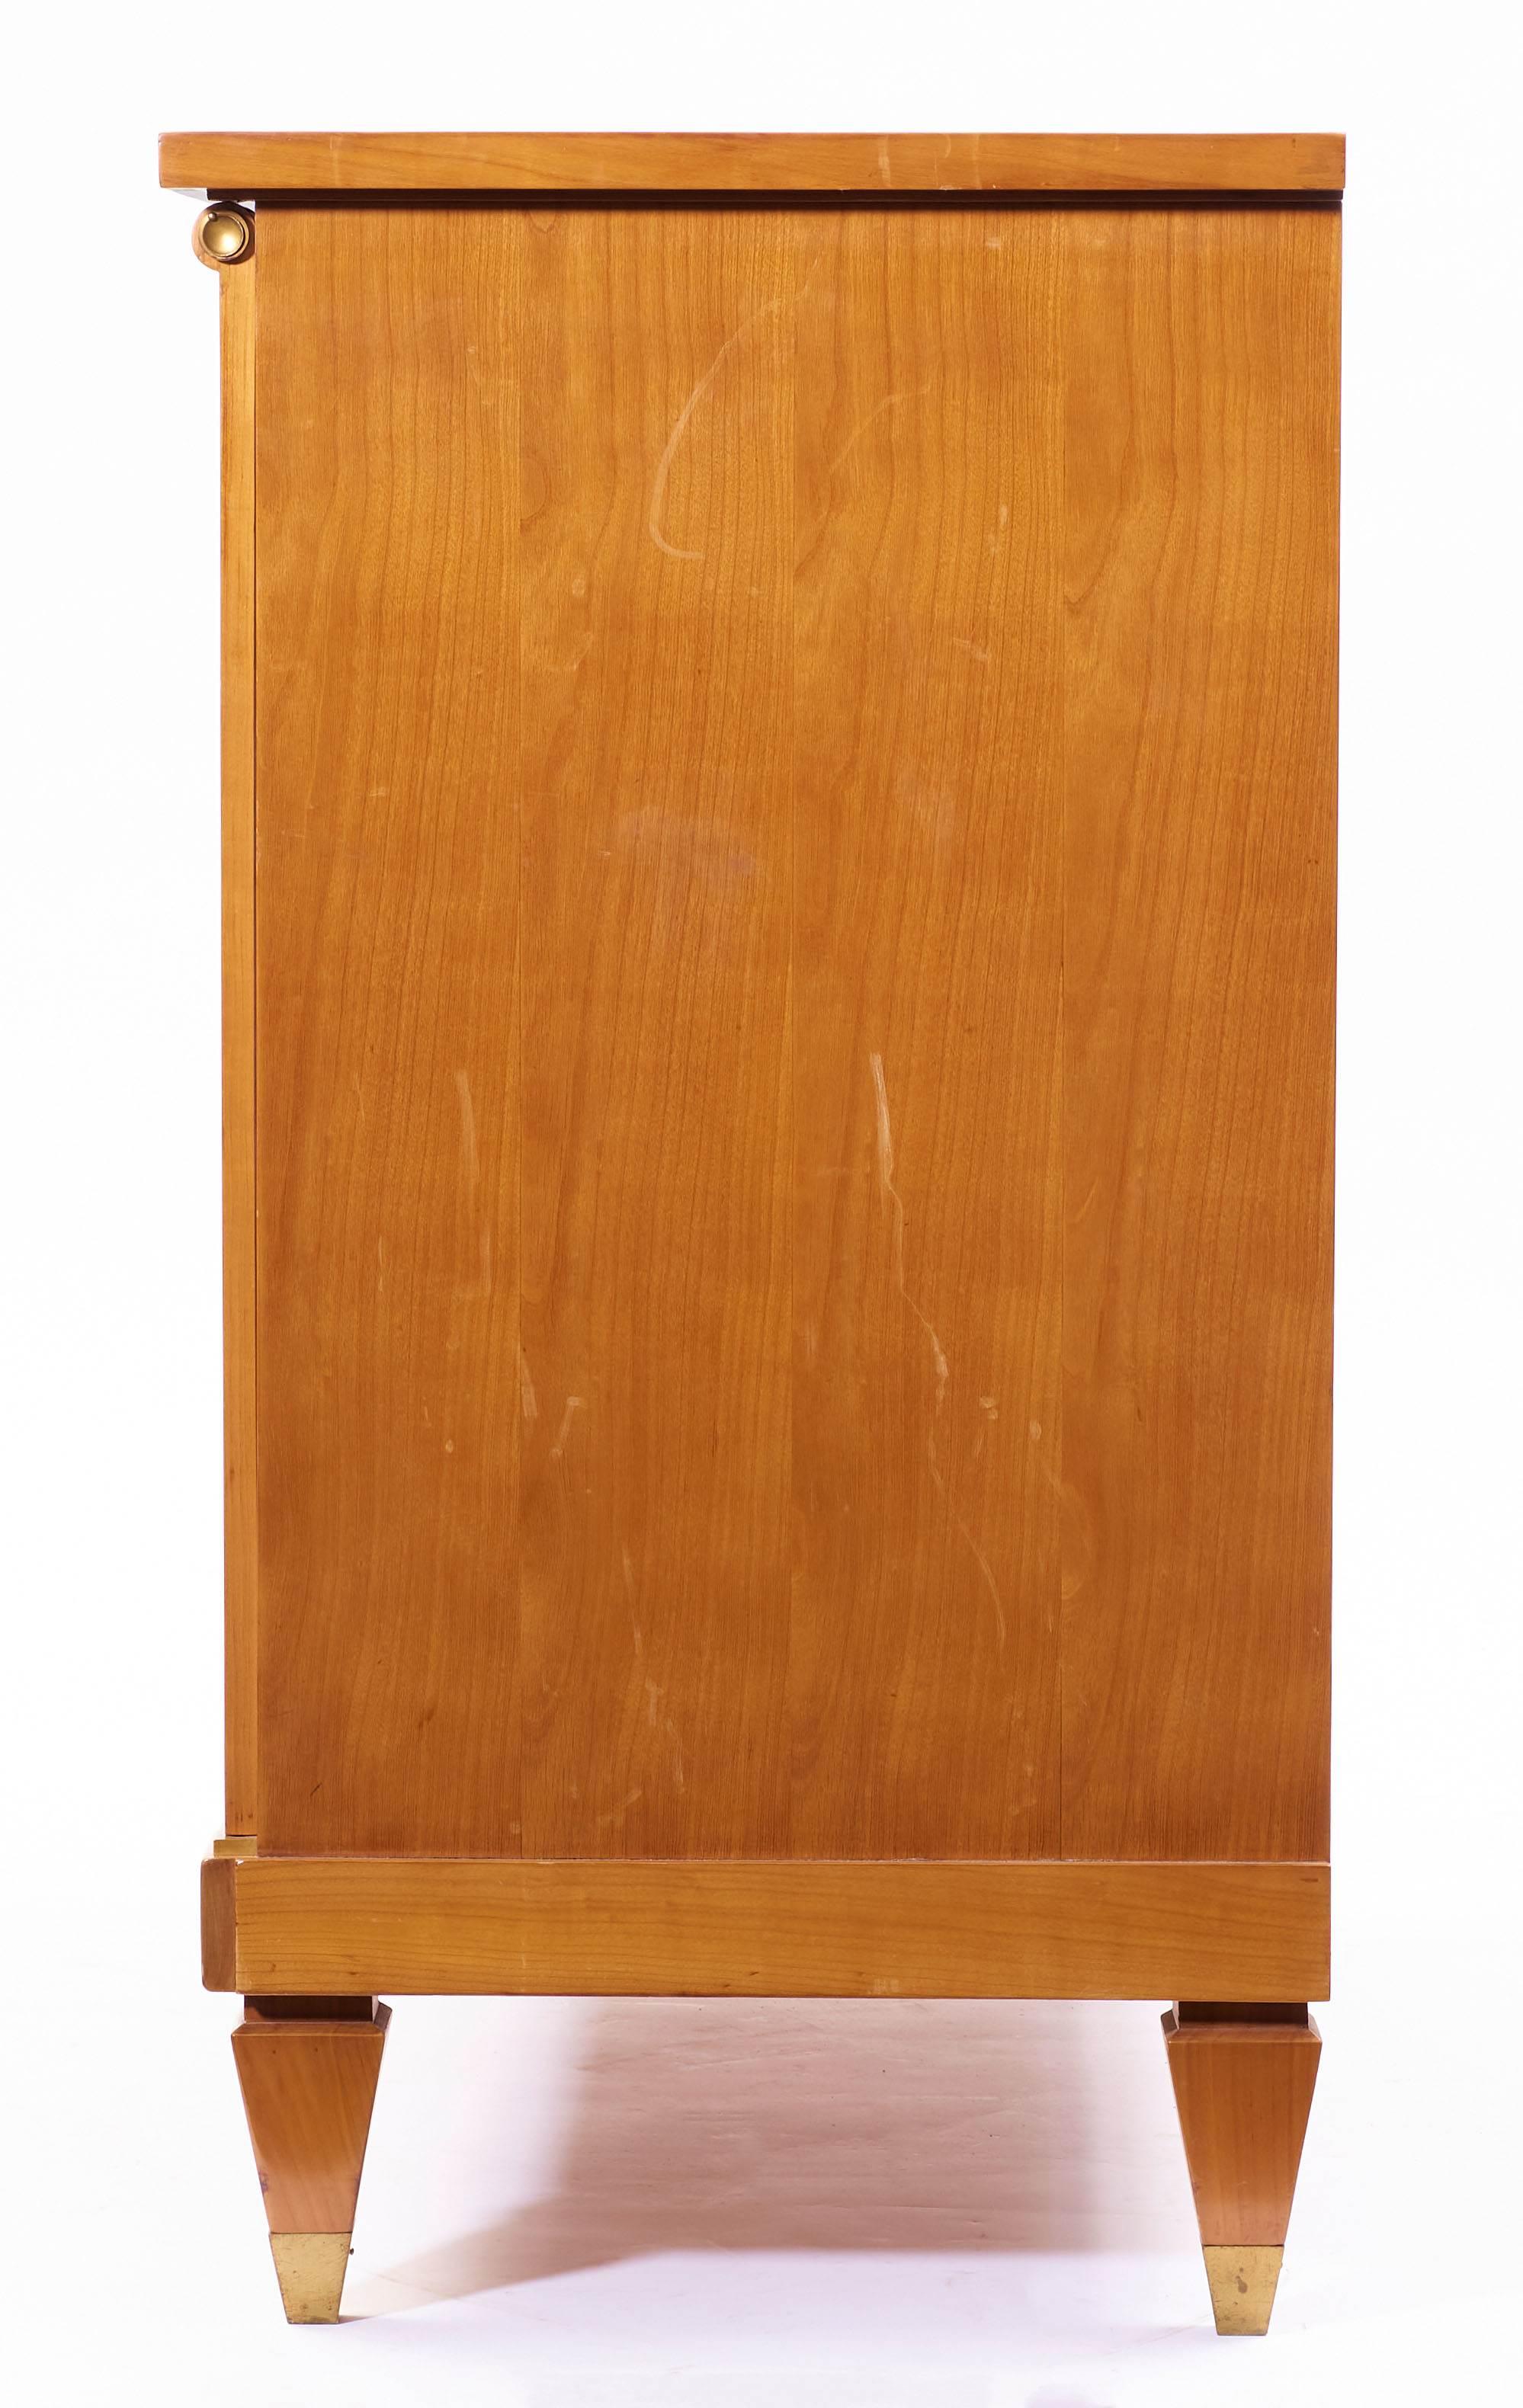 Französisches Art Deco Sideboard / Buffet aus Kirschholz von Maurice Rinck

Maurice RINCK (1902-1983).

Anrichte aus Kirschbaumfurnier mit zwei Türen. Die Pfosten sind in klassizistischen Pilastern eingefasst. Er ruht auf sechs ummantelten Füßen.